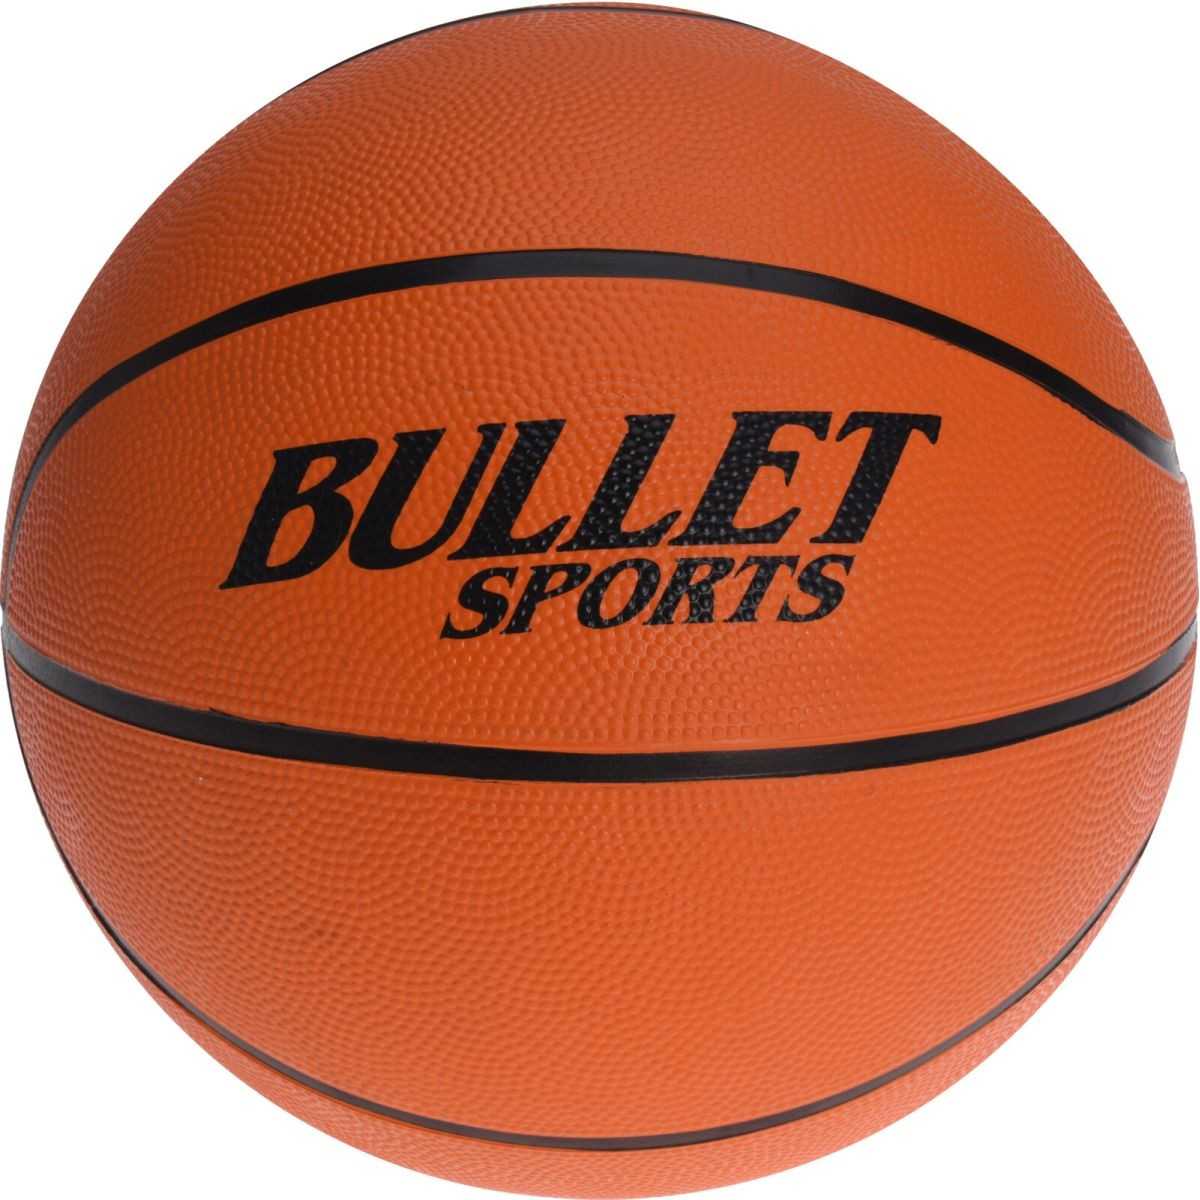 Bullet Sports krepšinio kamuolys, 7 